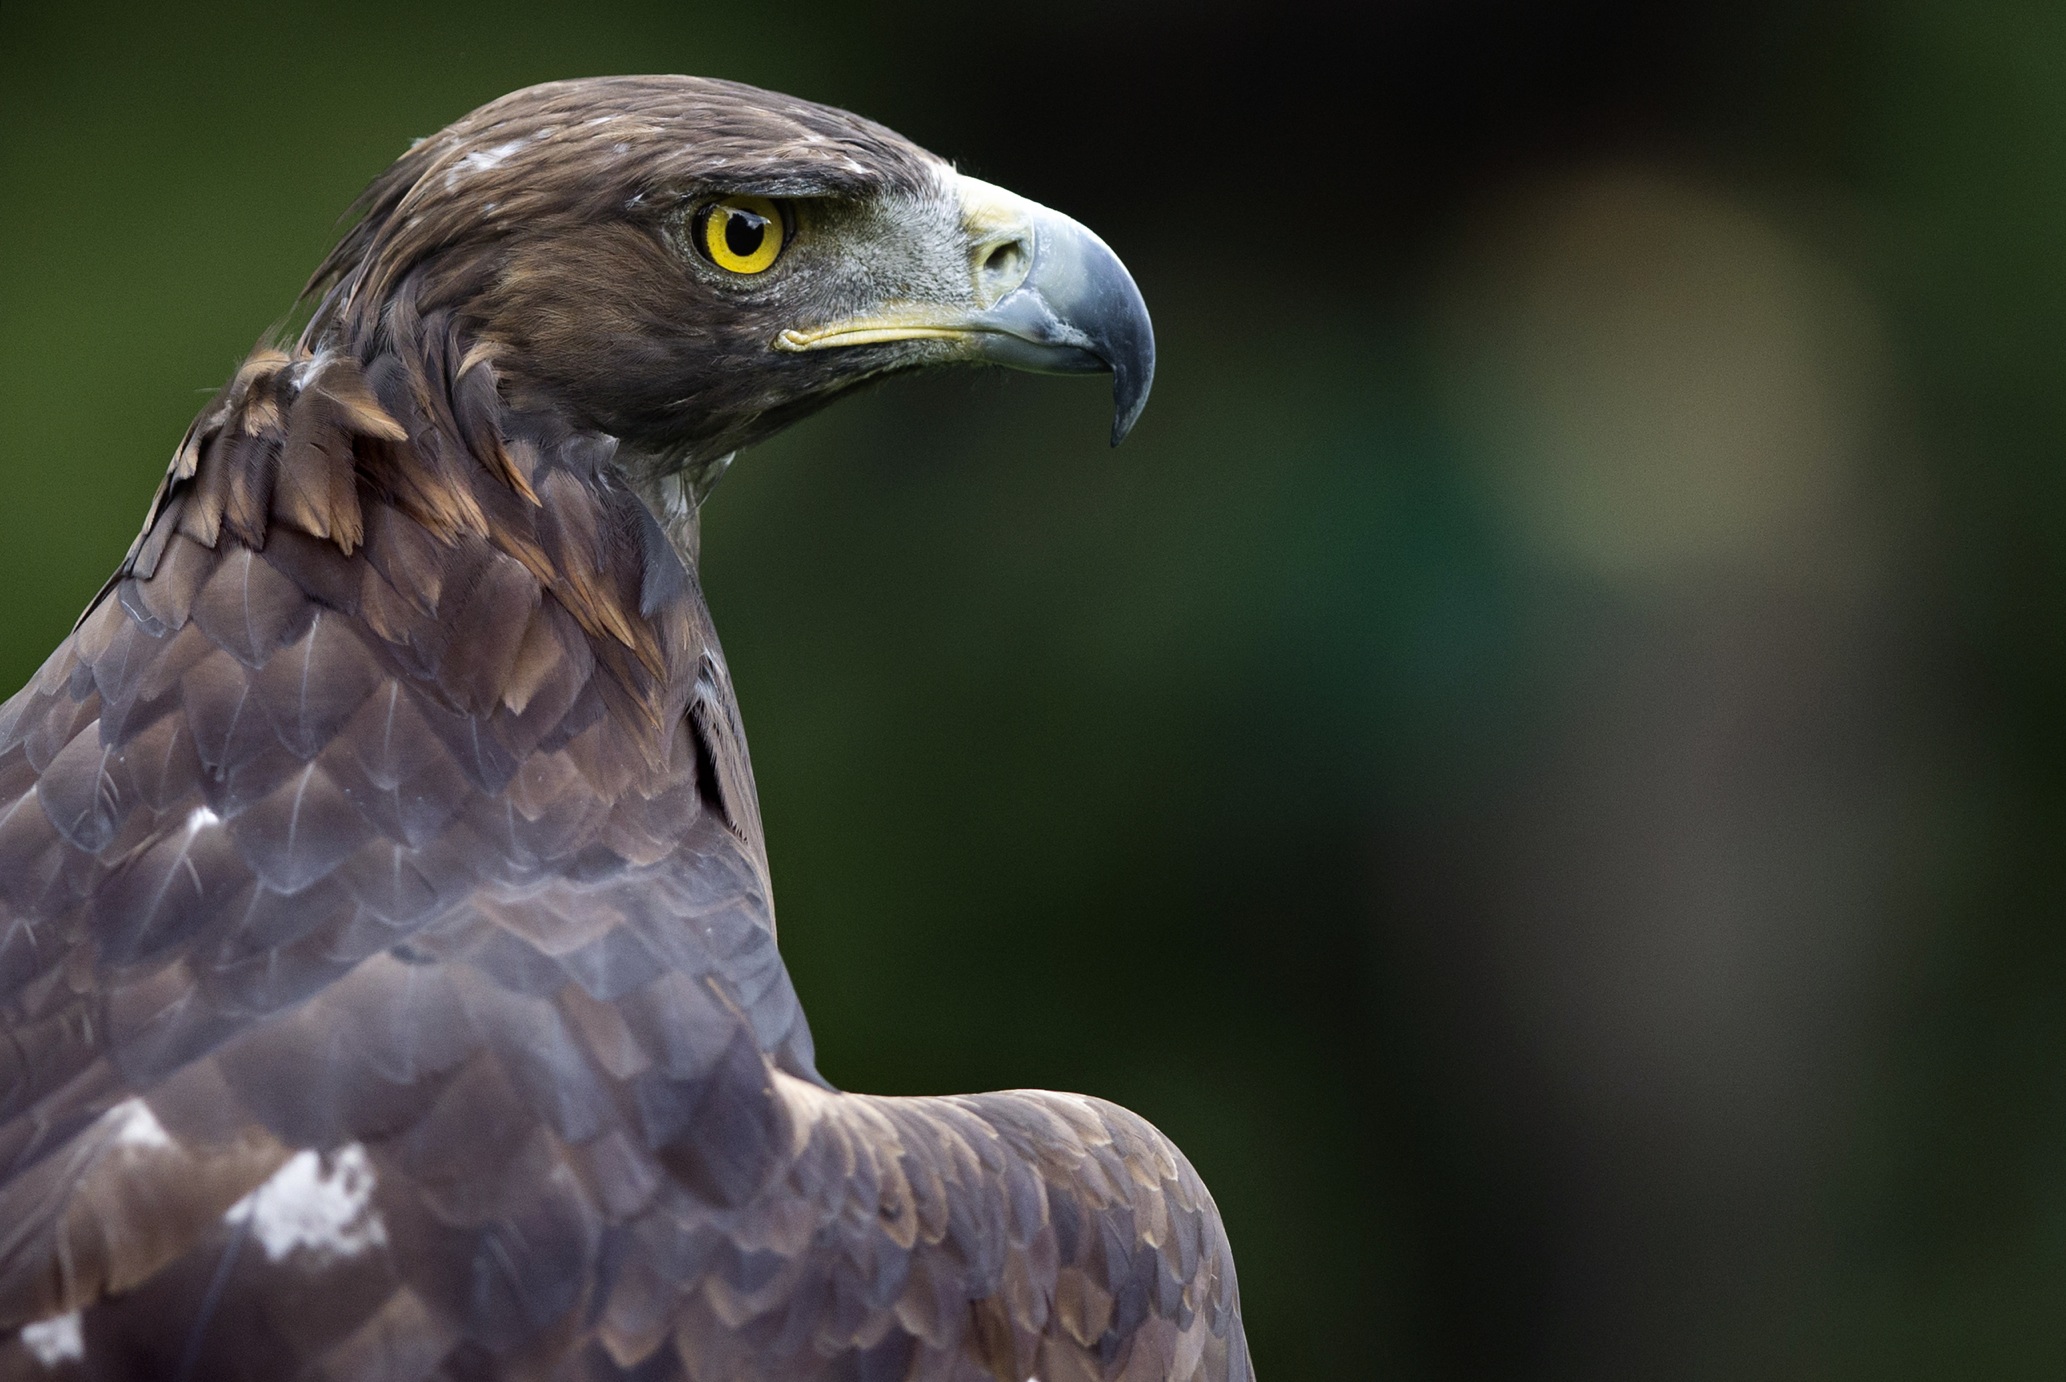 Mexico S National Bird Faces Extinction News Telesur English